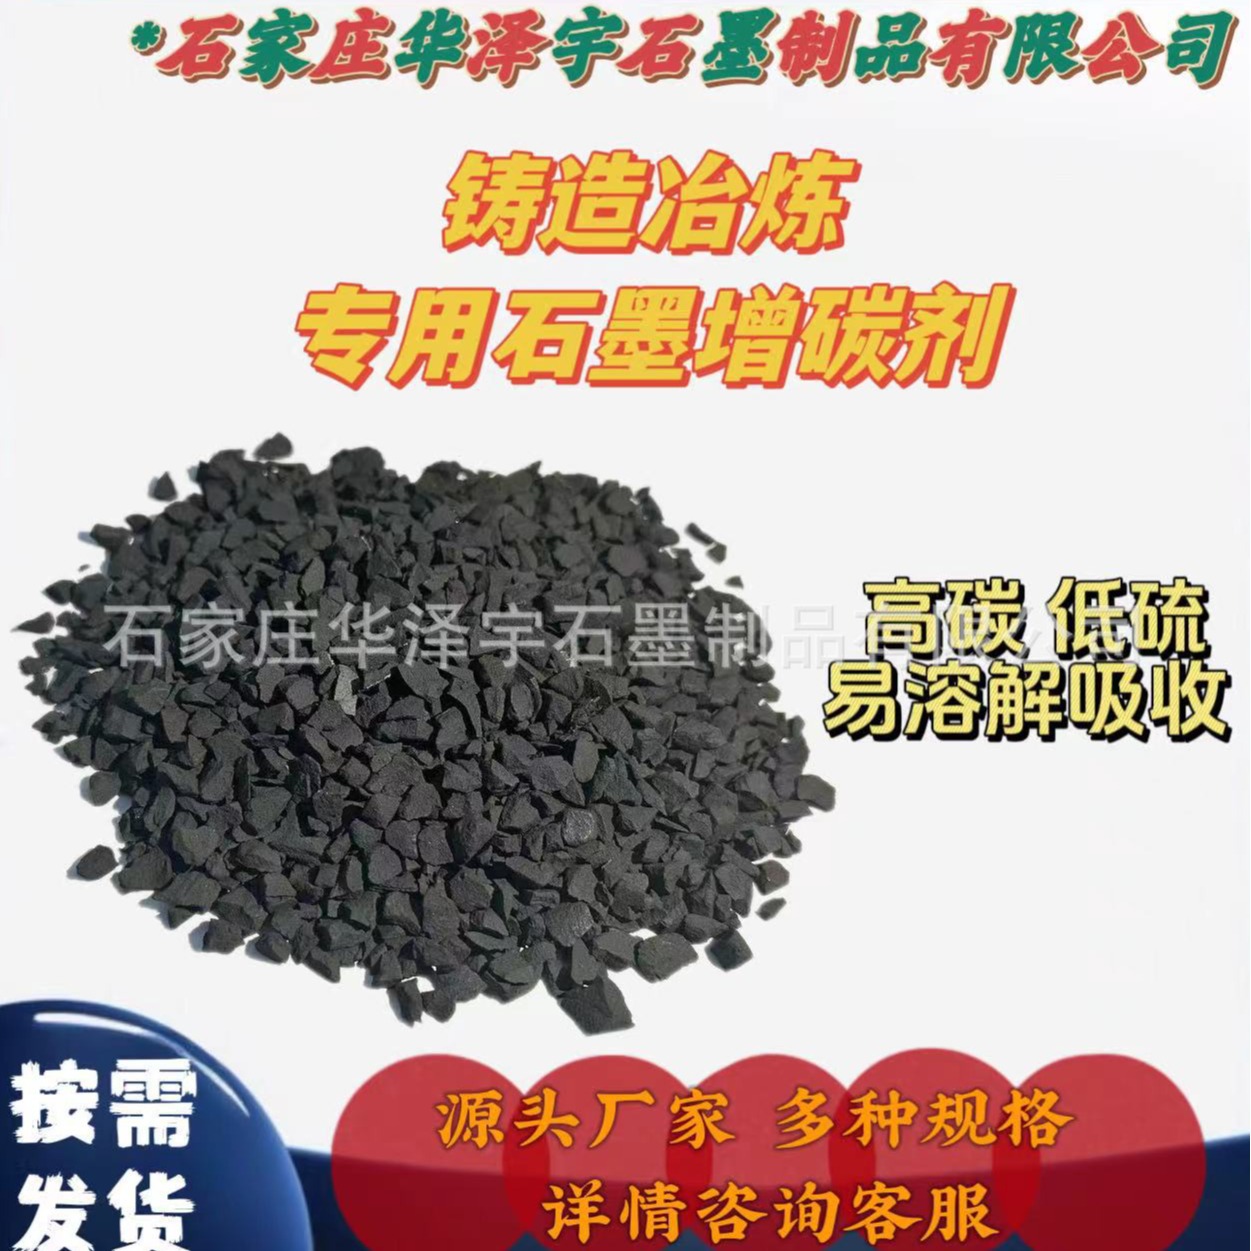 铸造专用全石墨化增碳剂 含碳量95-98 低硫低灰 易溶解吸收